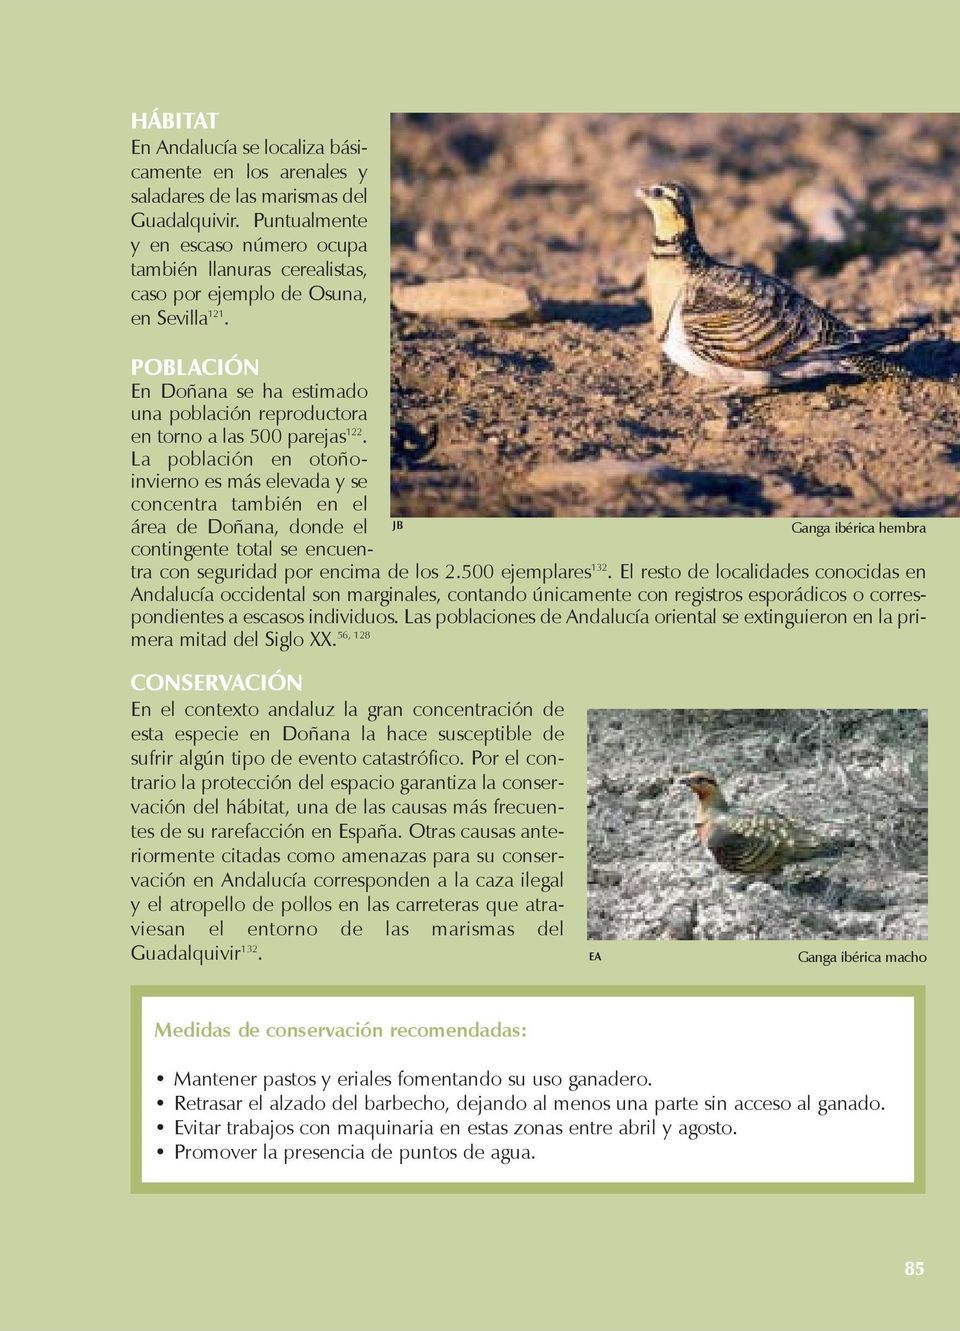 JB Ganga ibérica hembra POBLACIÓN En Doñana se ha estimado una población reproductora en torno a las 500 parejas 122.